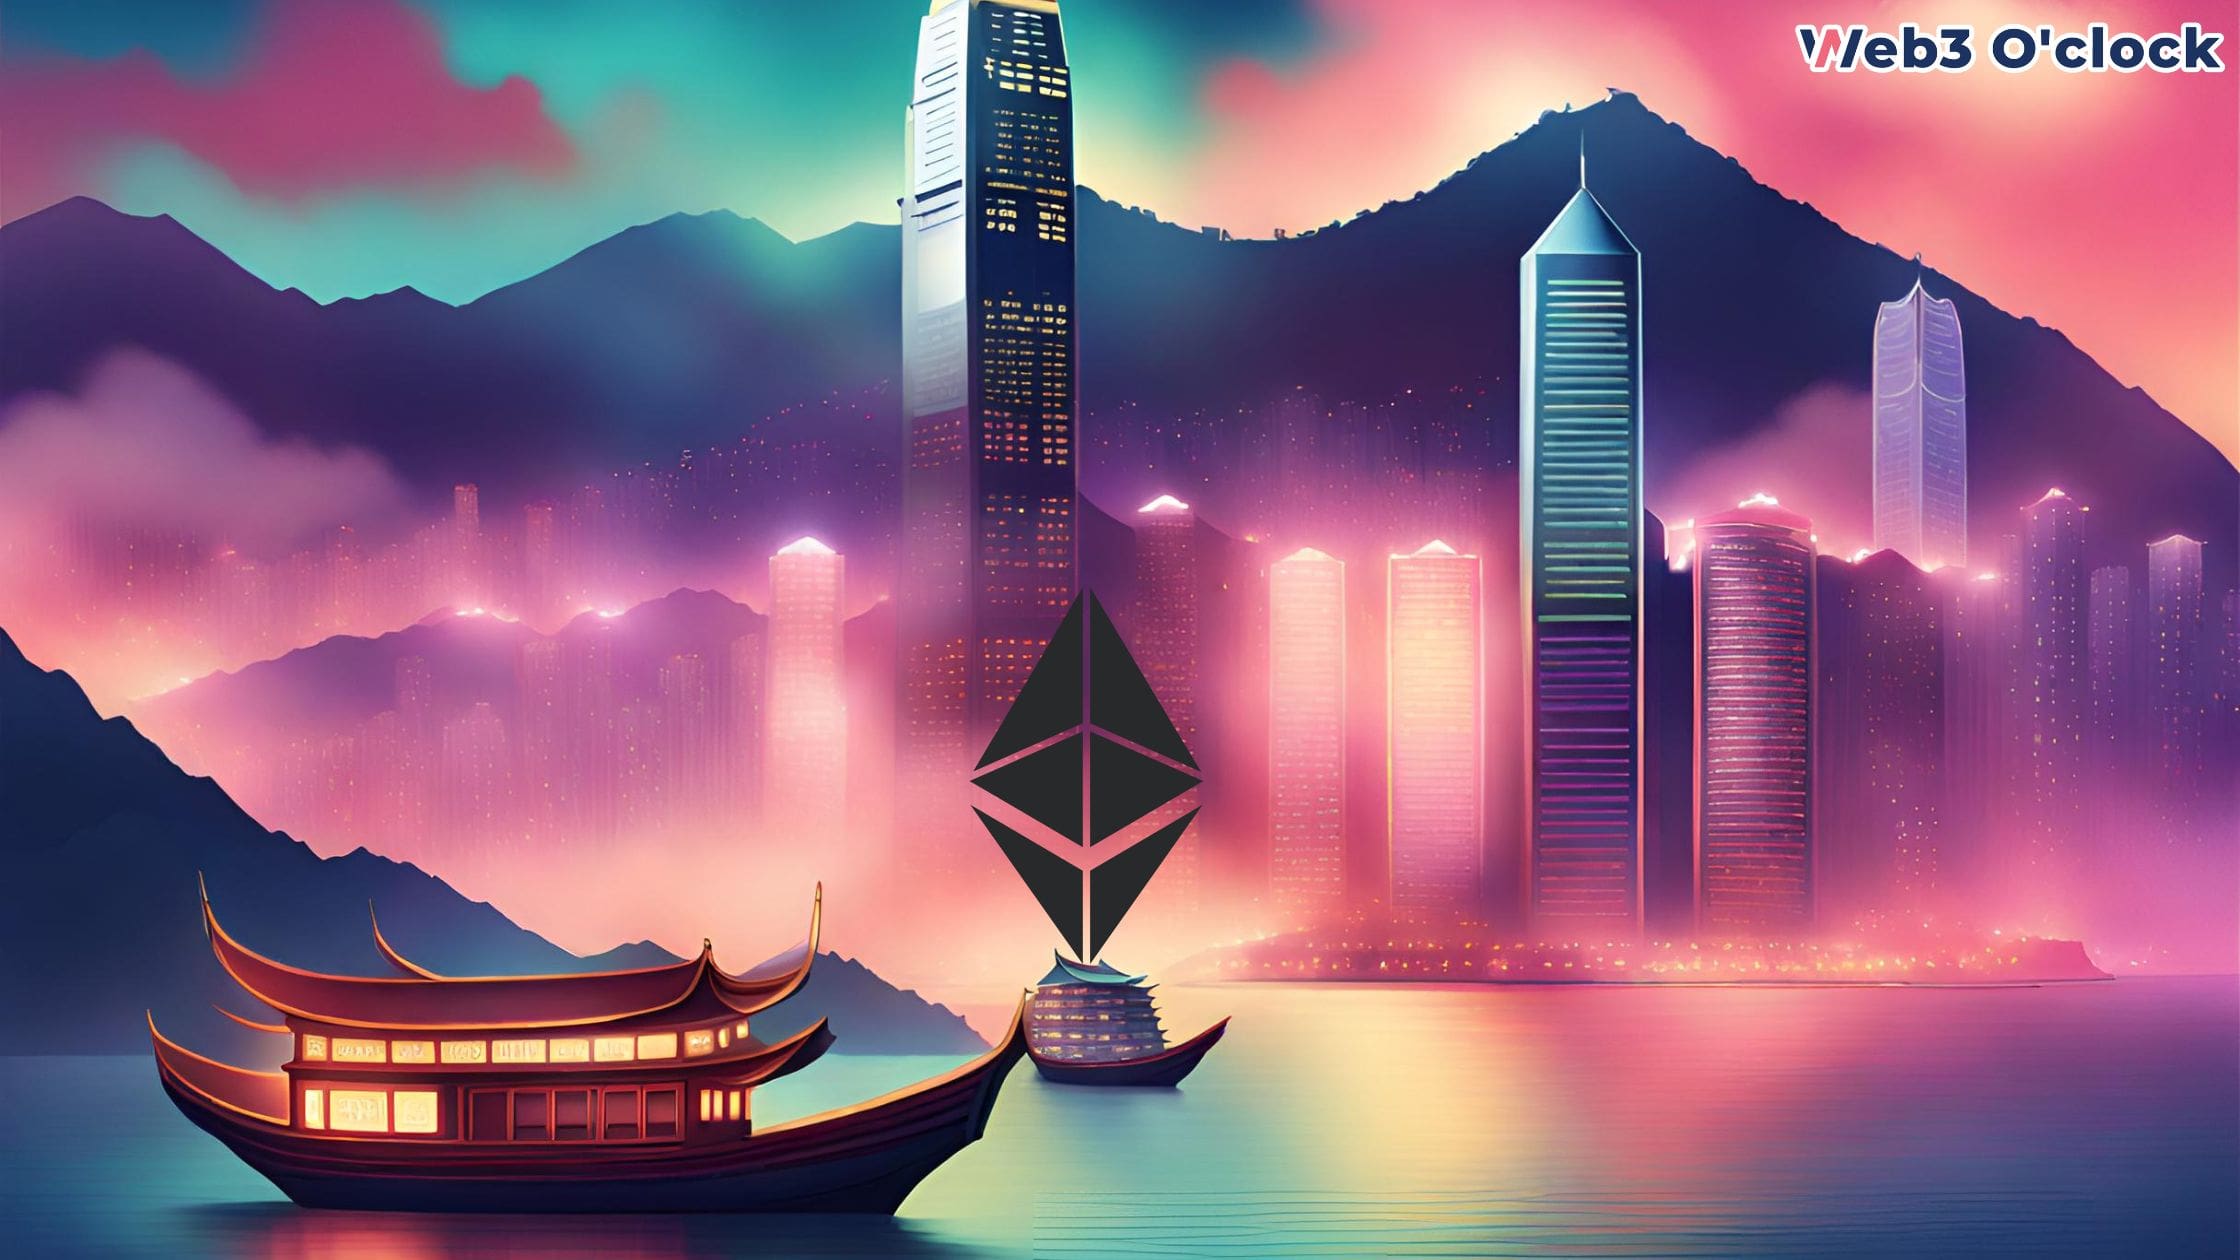 Hong Kong Launches ETF by web3 o'clock